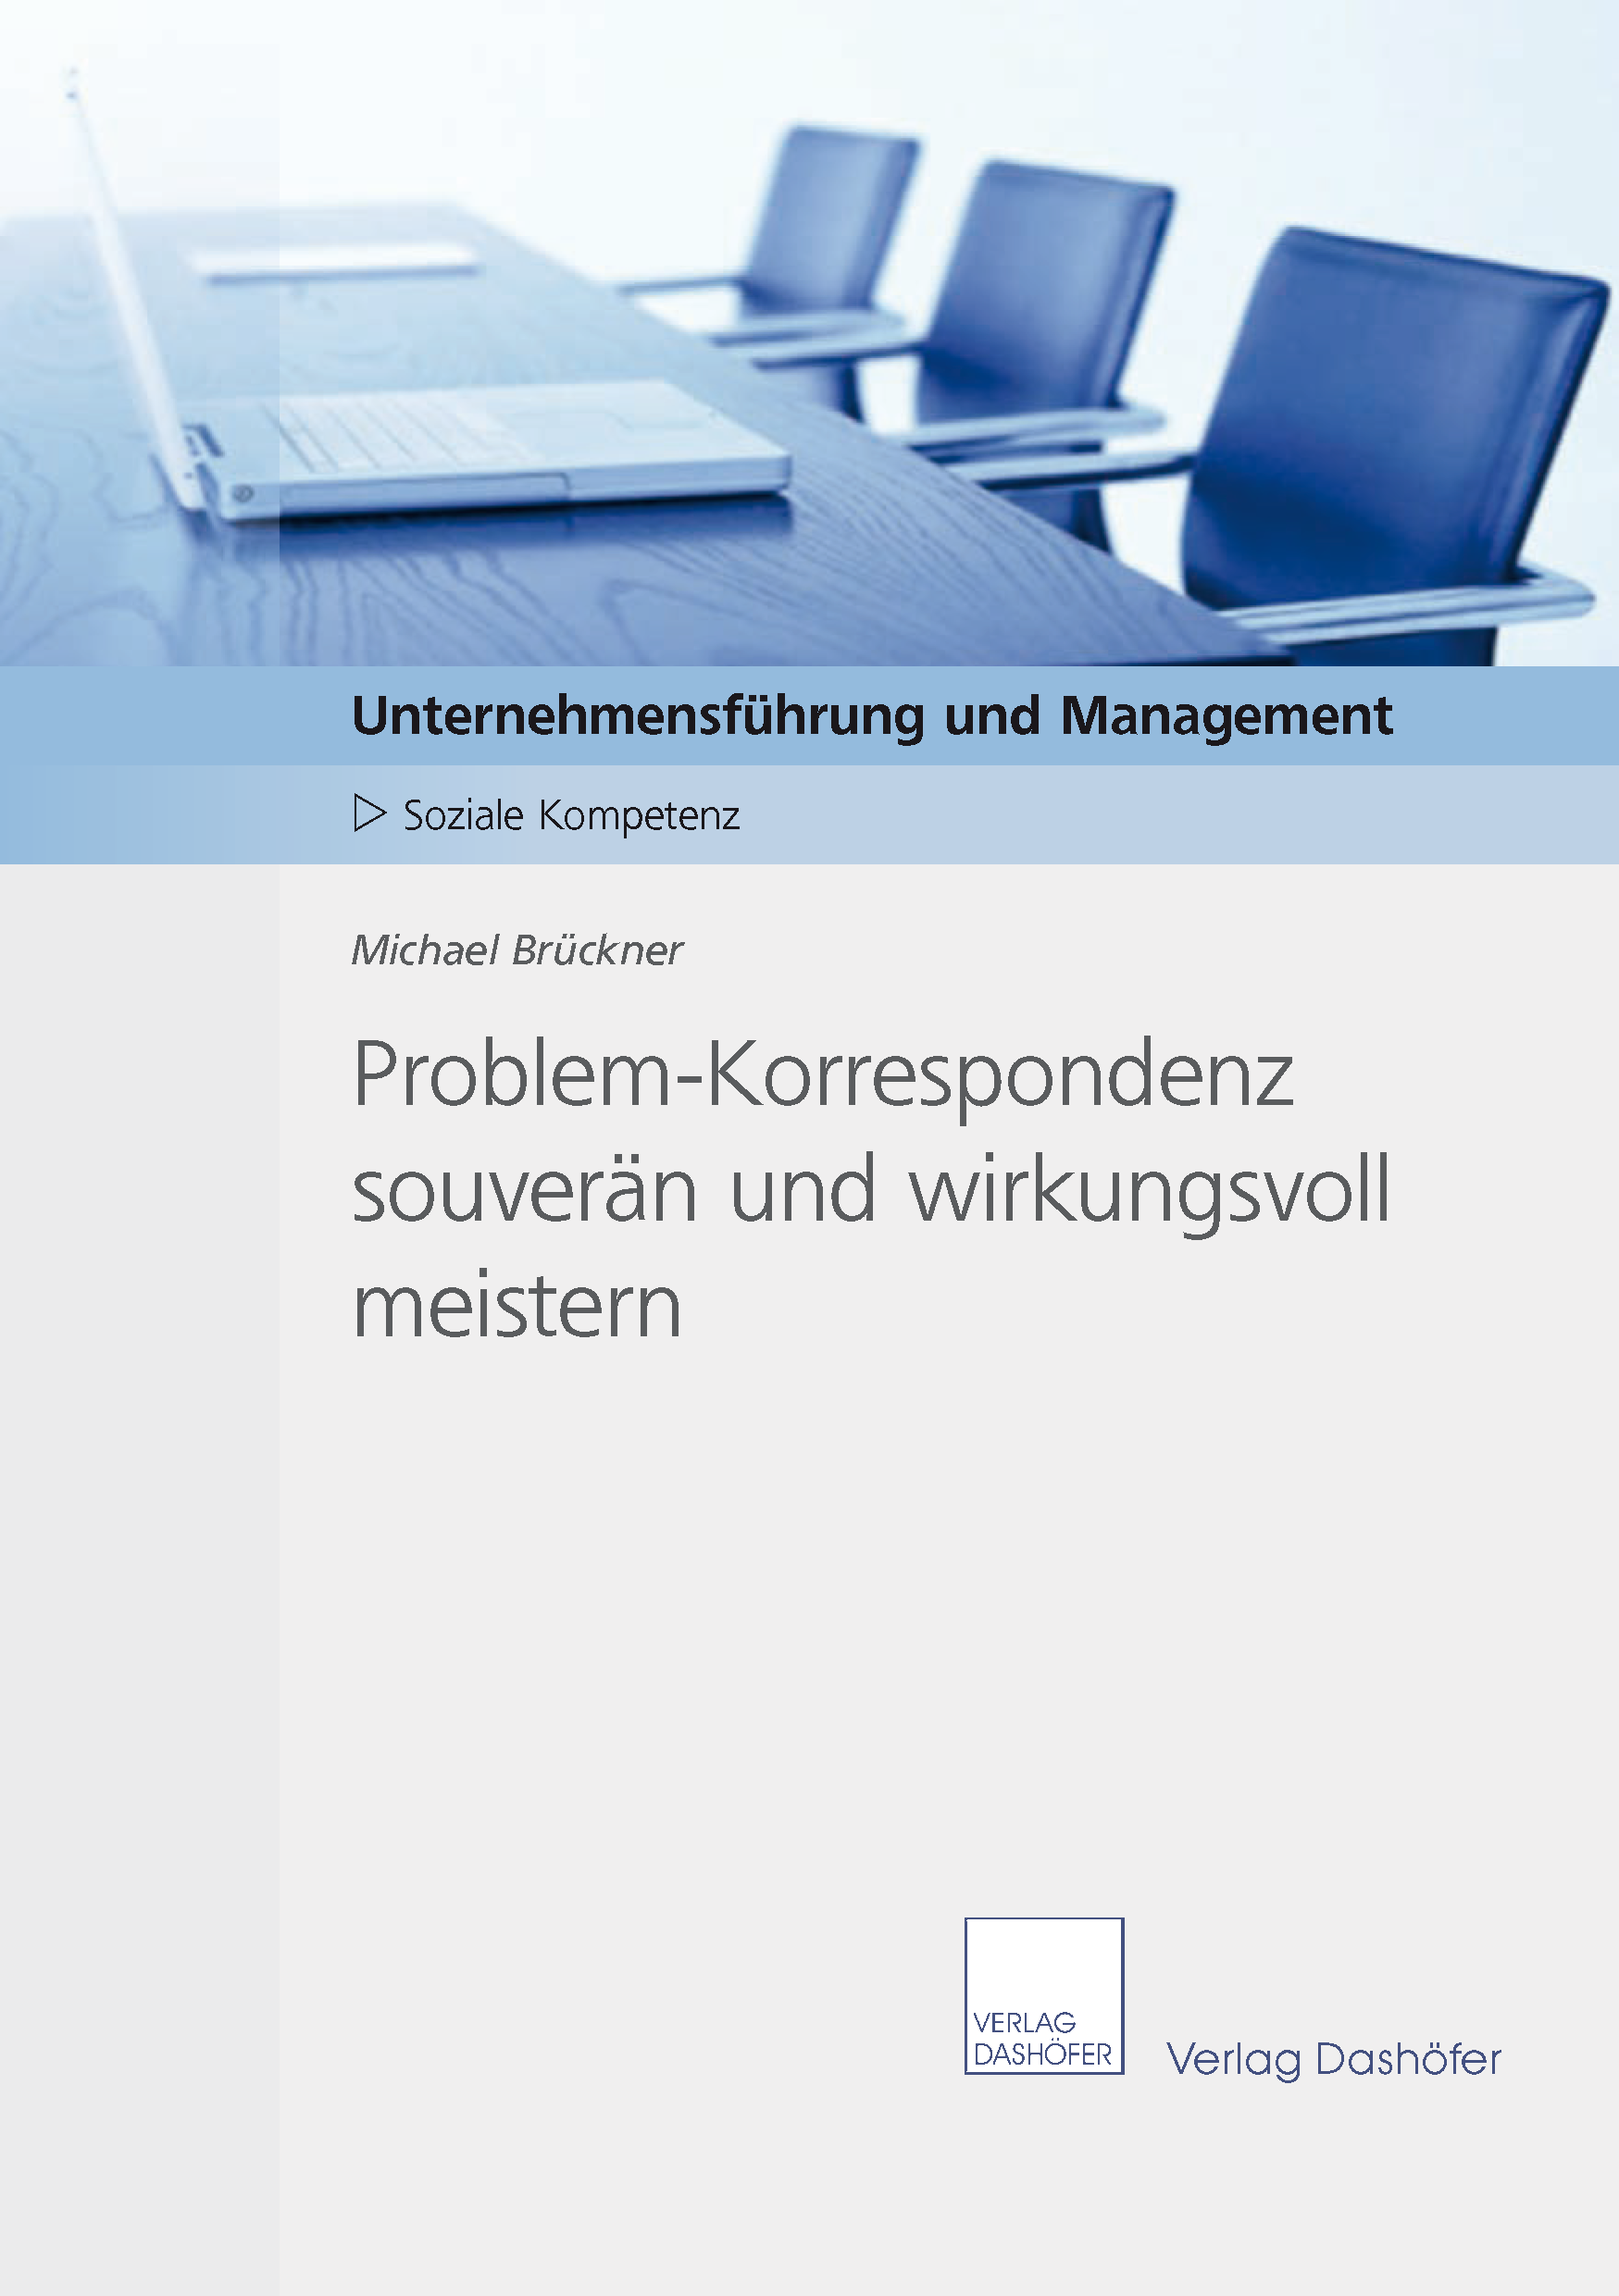 Fachbuch: Problem-Korrespondenz souverän und wirkungsvoll meistern